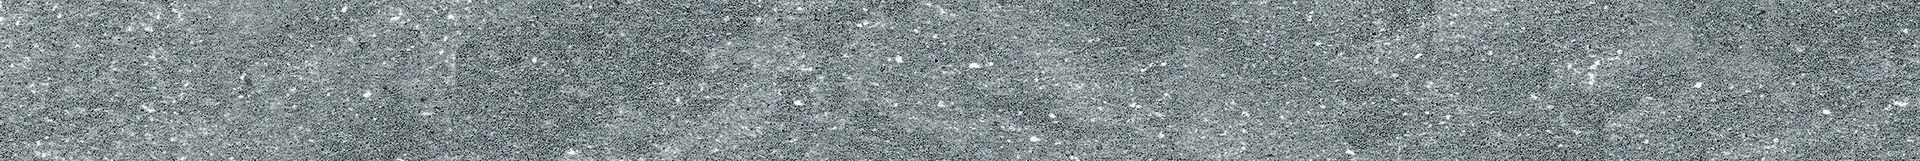 Плитка из керамогранита матовая Italon Дженезис 7.2x60 серый (610130002155) плитка из керамогранита матовая italon дженезис 15x15 серый 600010001993